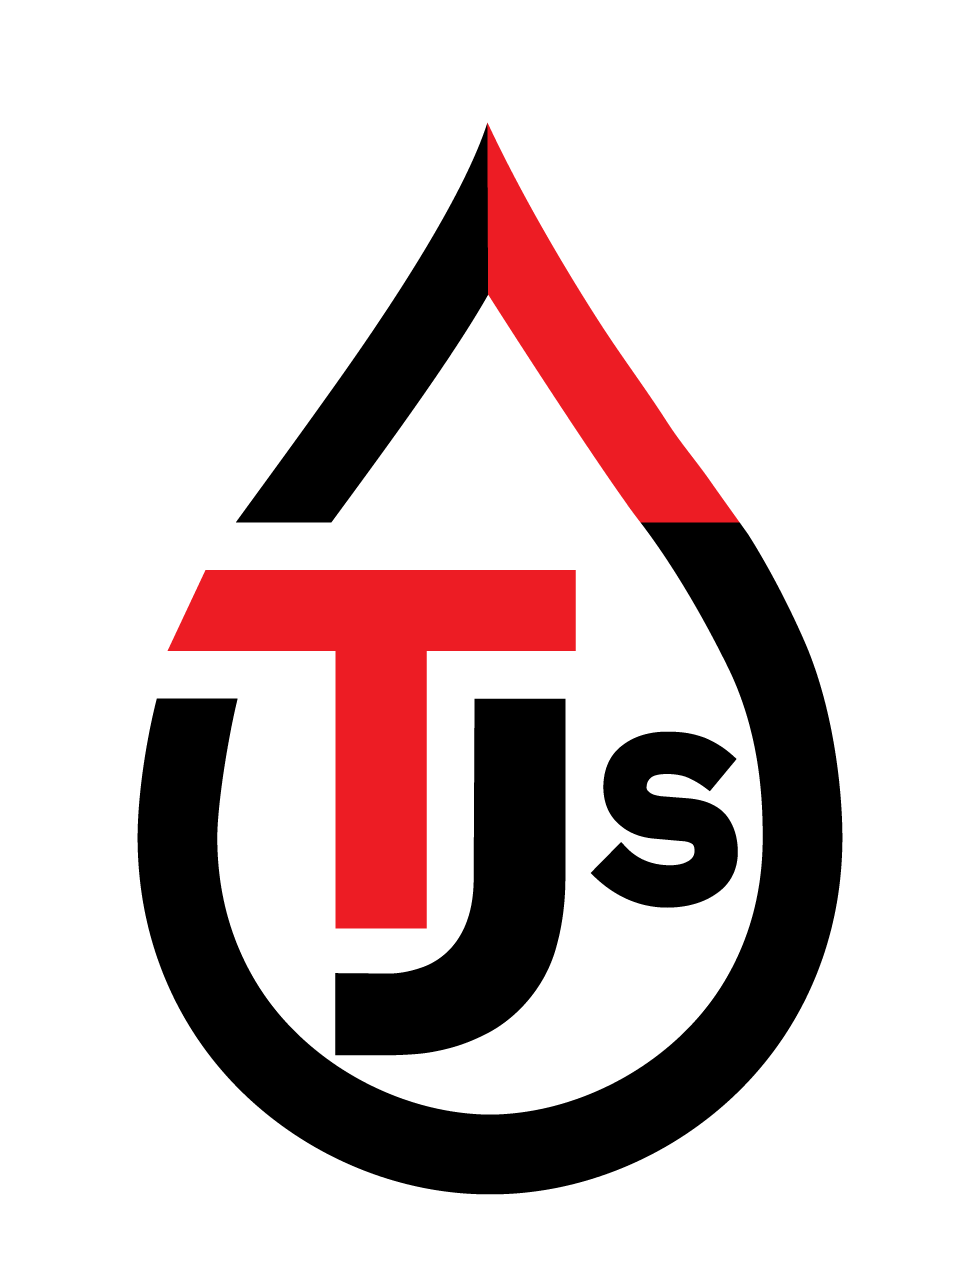 TJs Clearing Ltd.